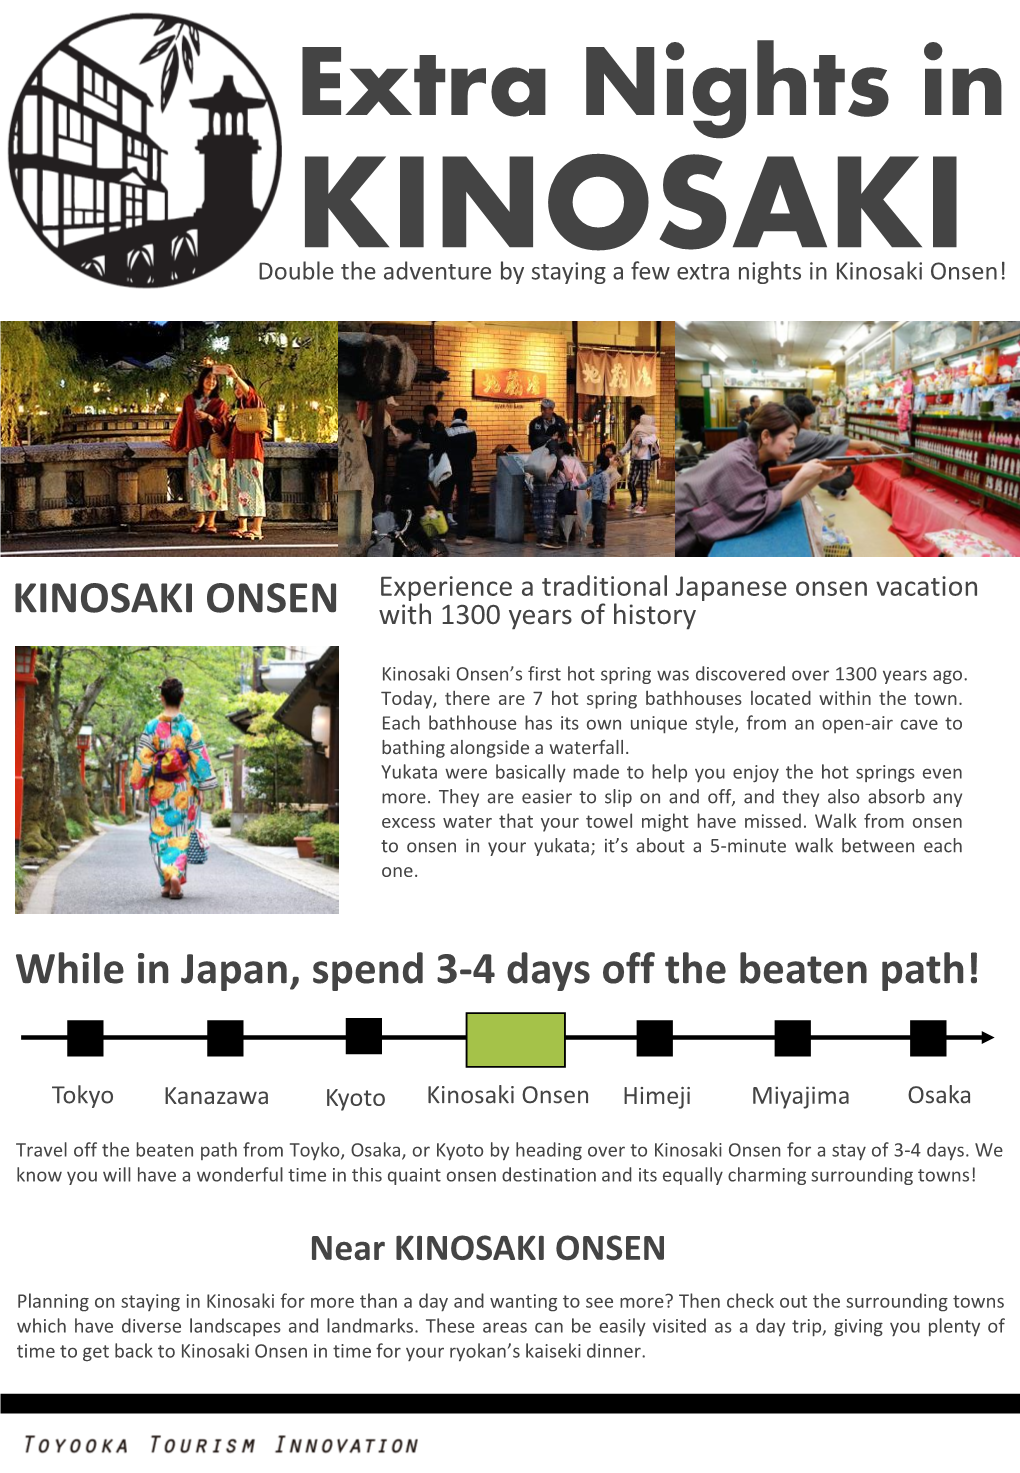 Extra Nights in KINOSAKI Double the Adventure by Staying a Few Extra Nights in Kinosaki Onsen!